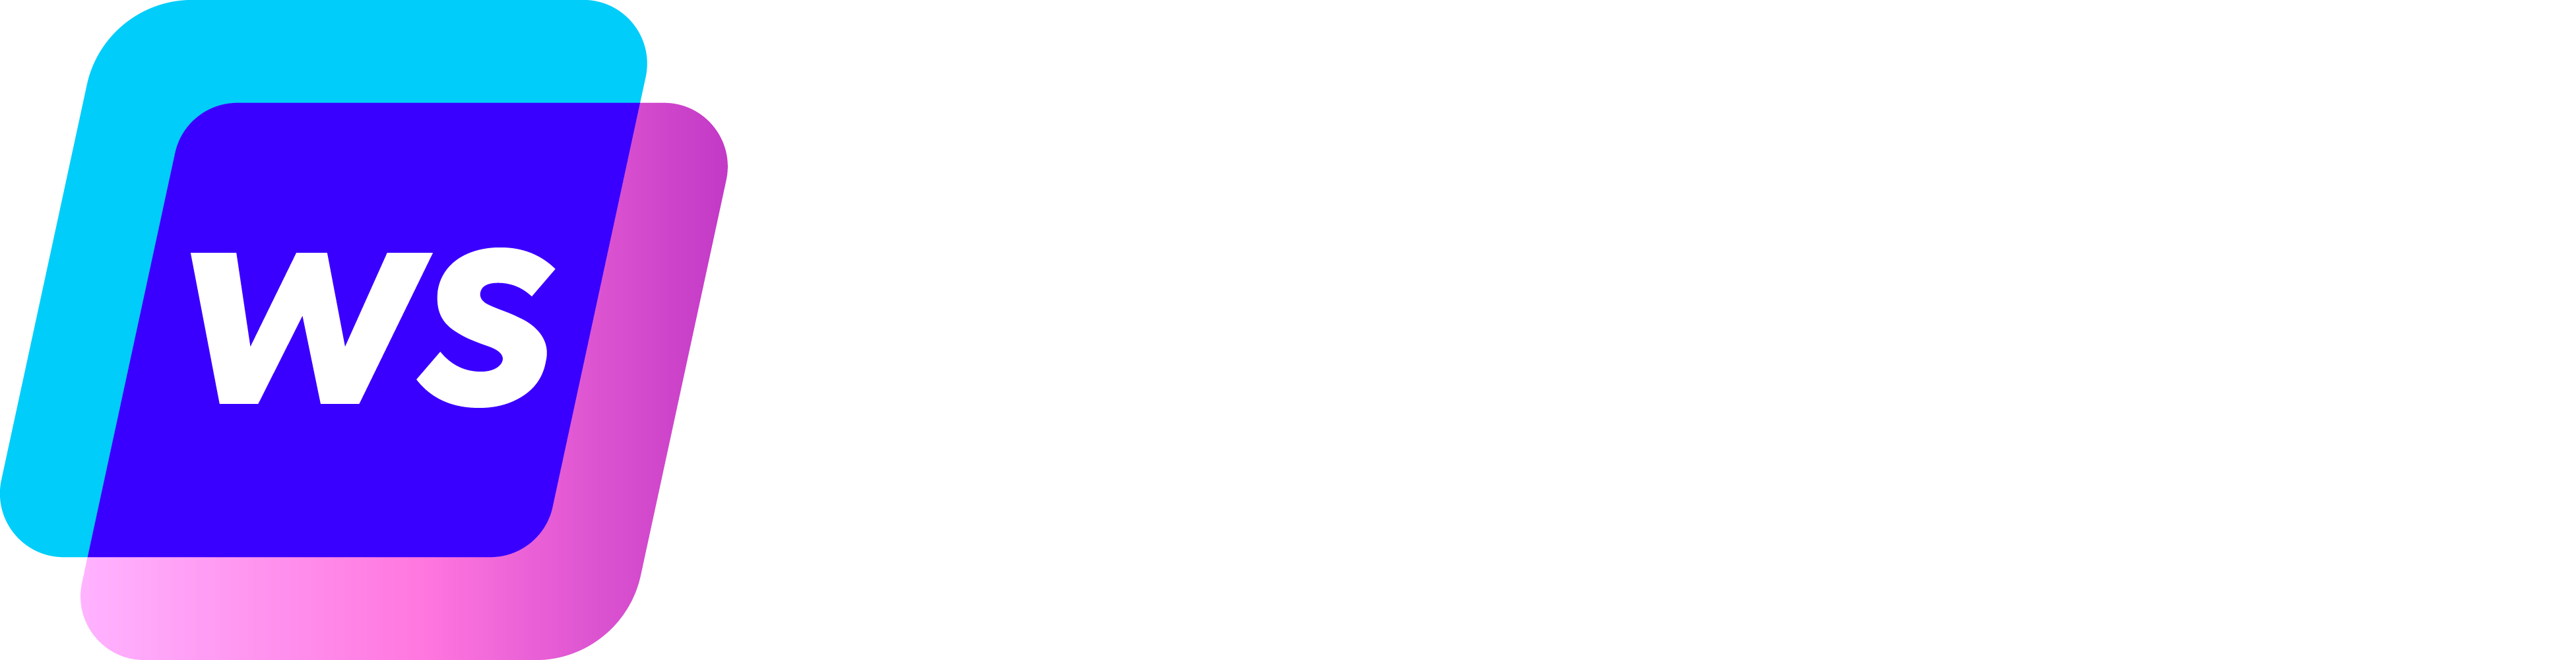 writesonic logo - Insidr.ai AI Tool